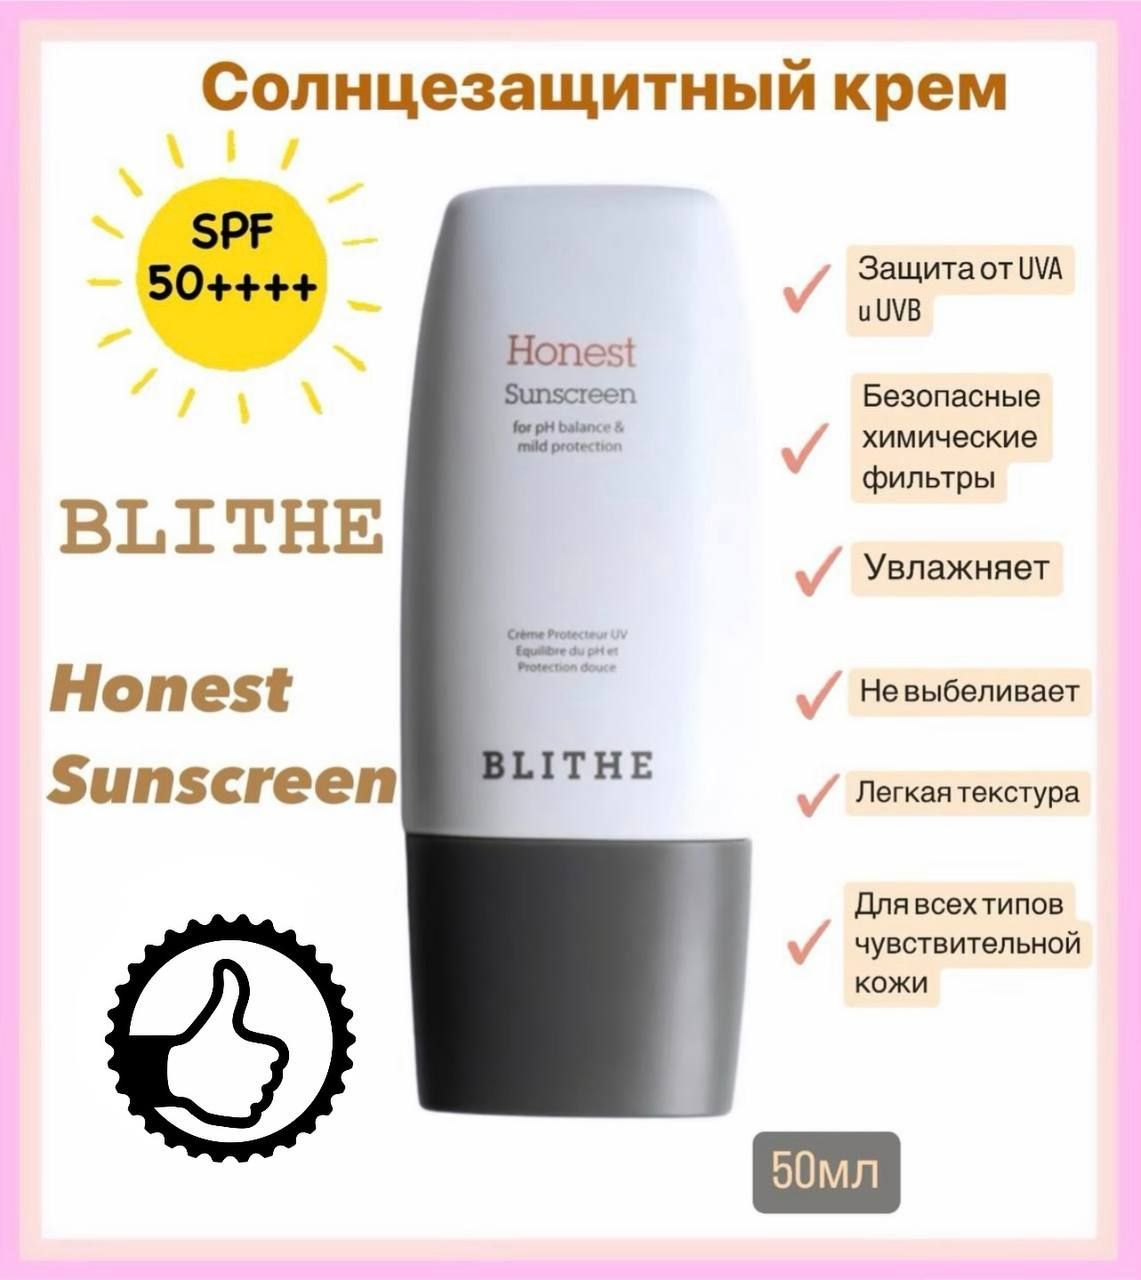 Blithe honest sunscreen